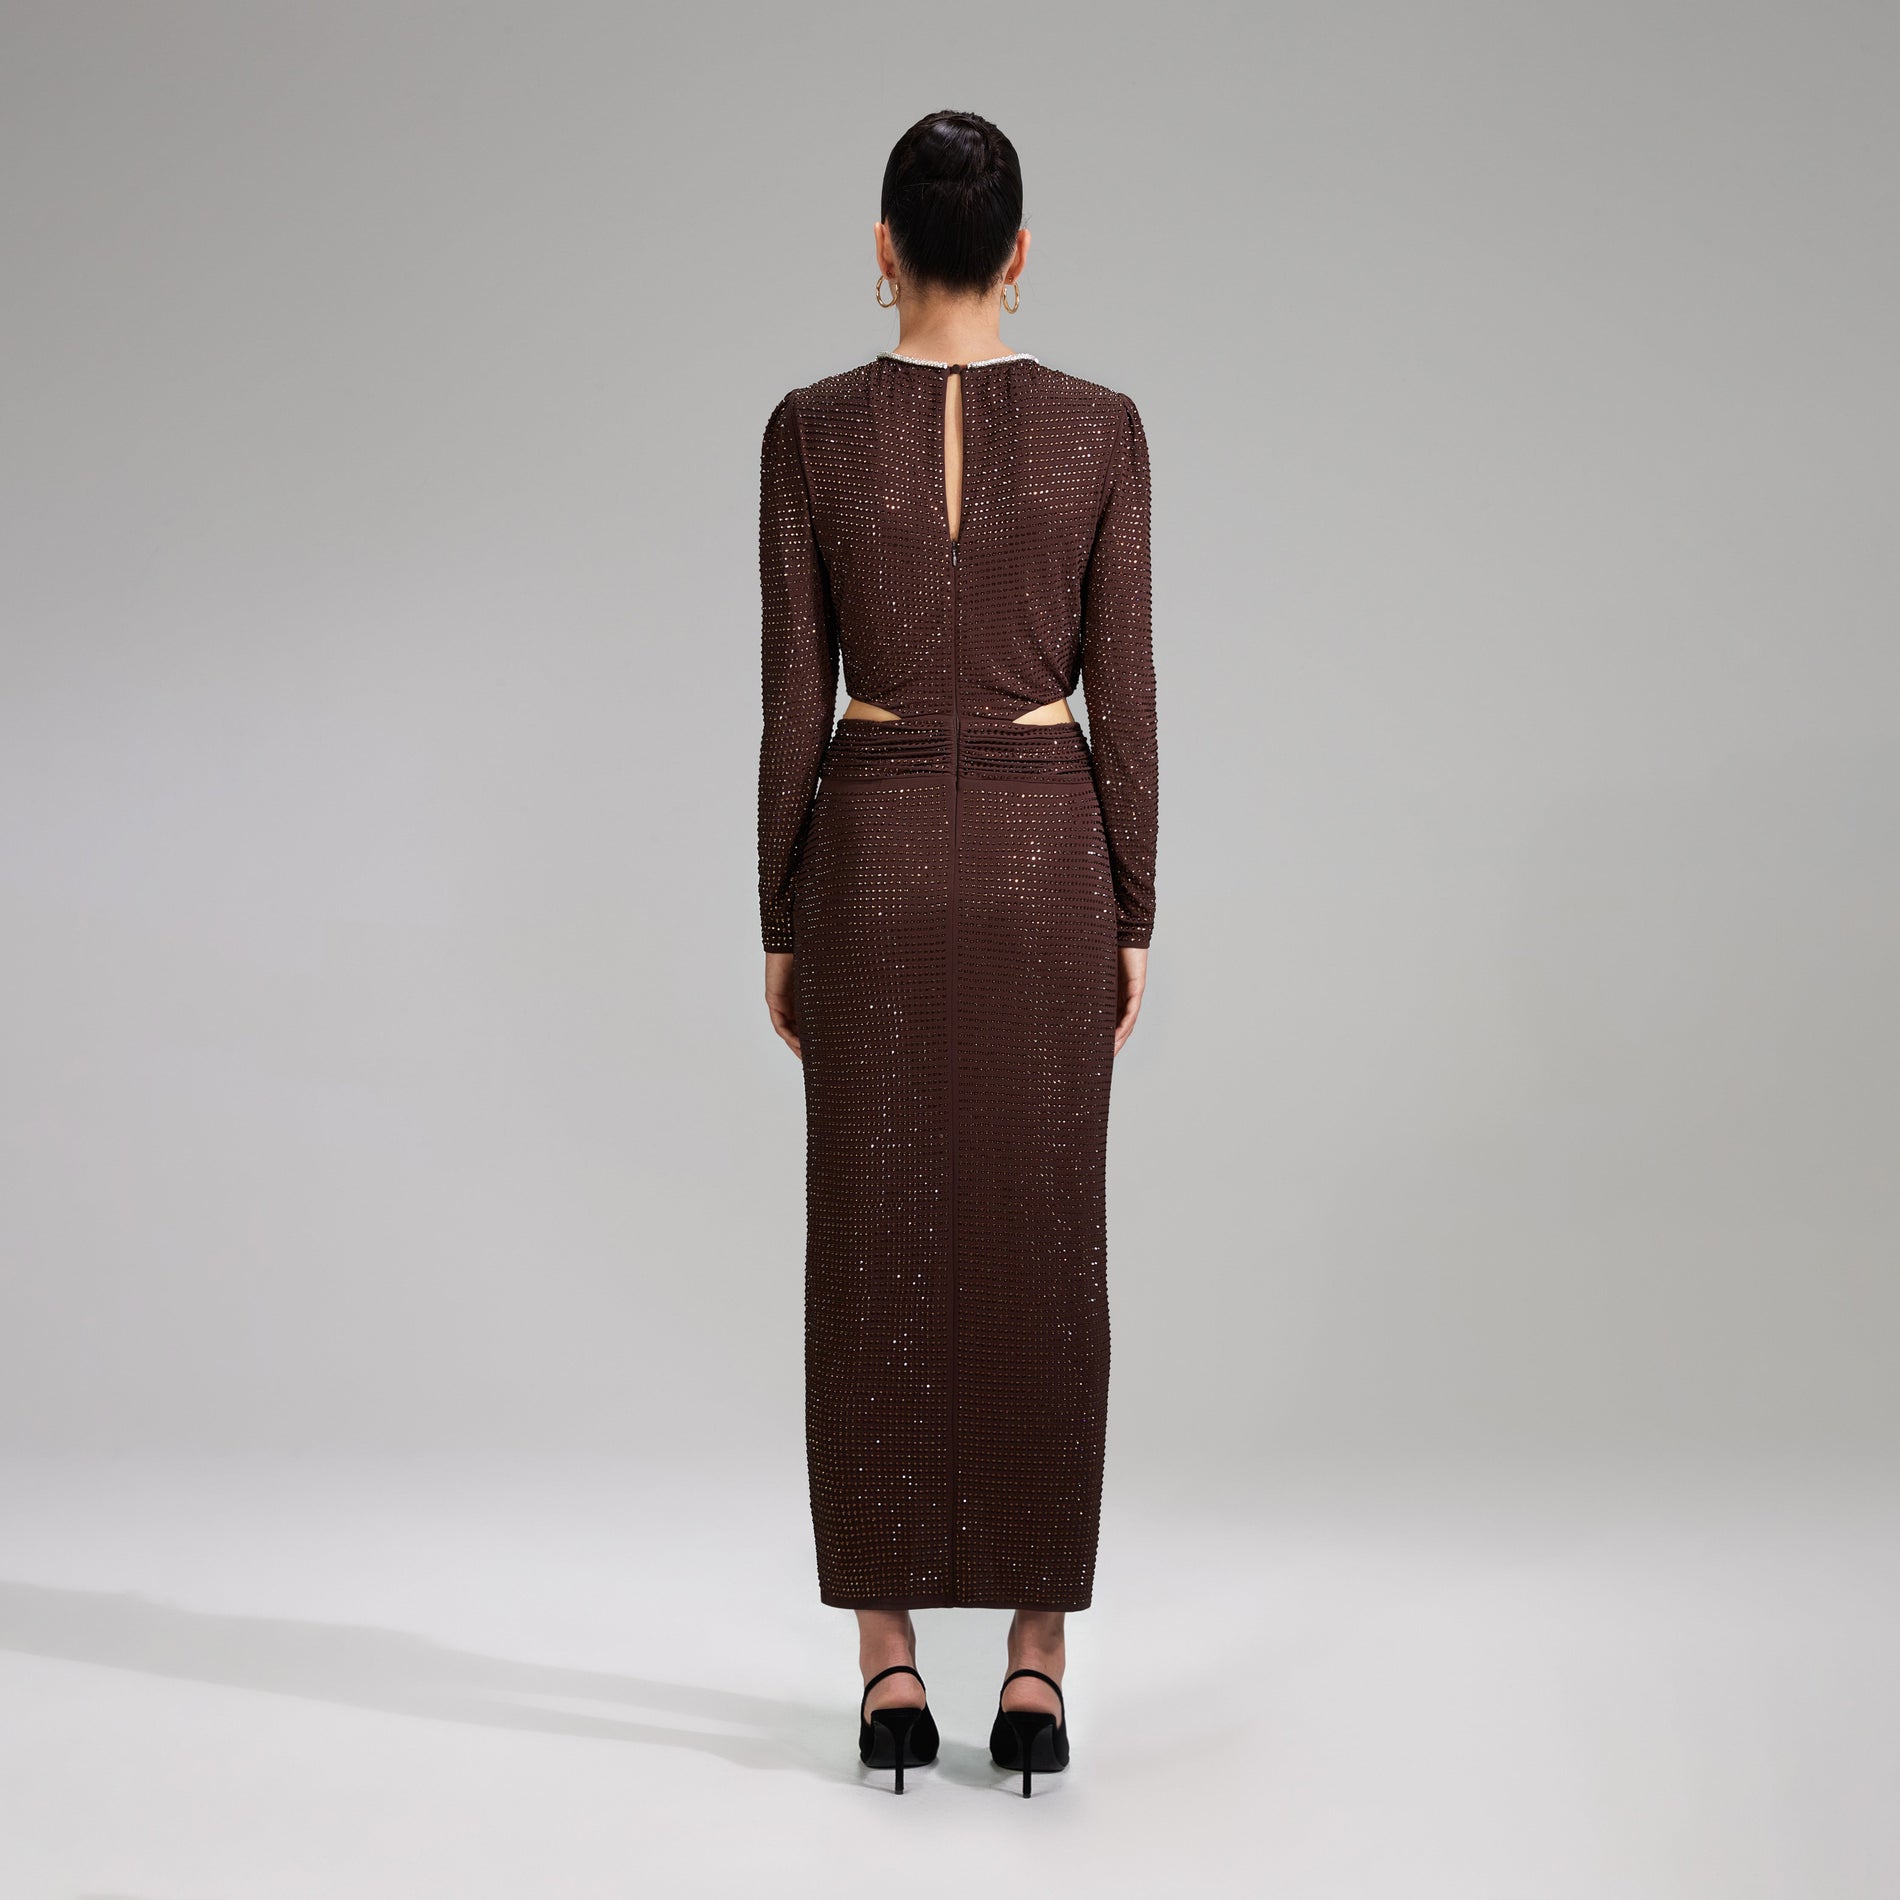 A woman wearing the Brown Rhinestone Midi Dress